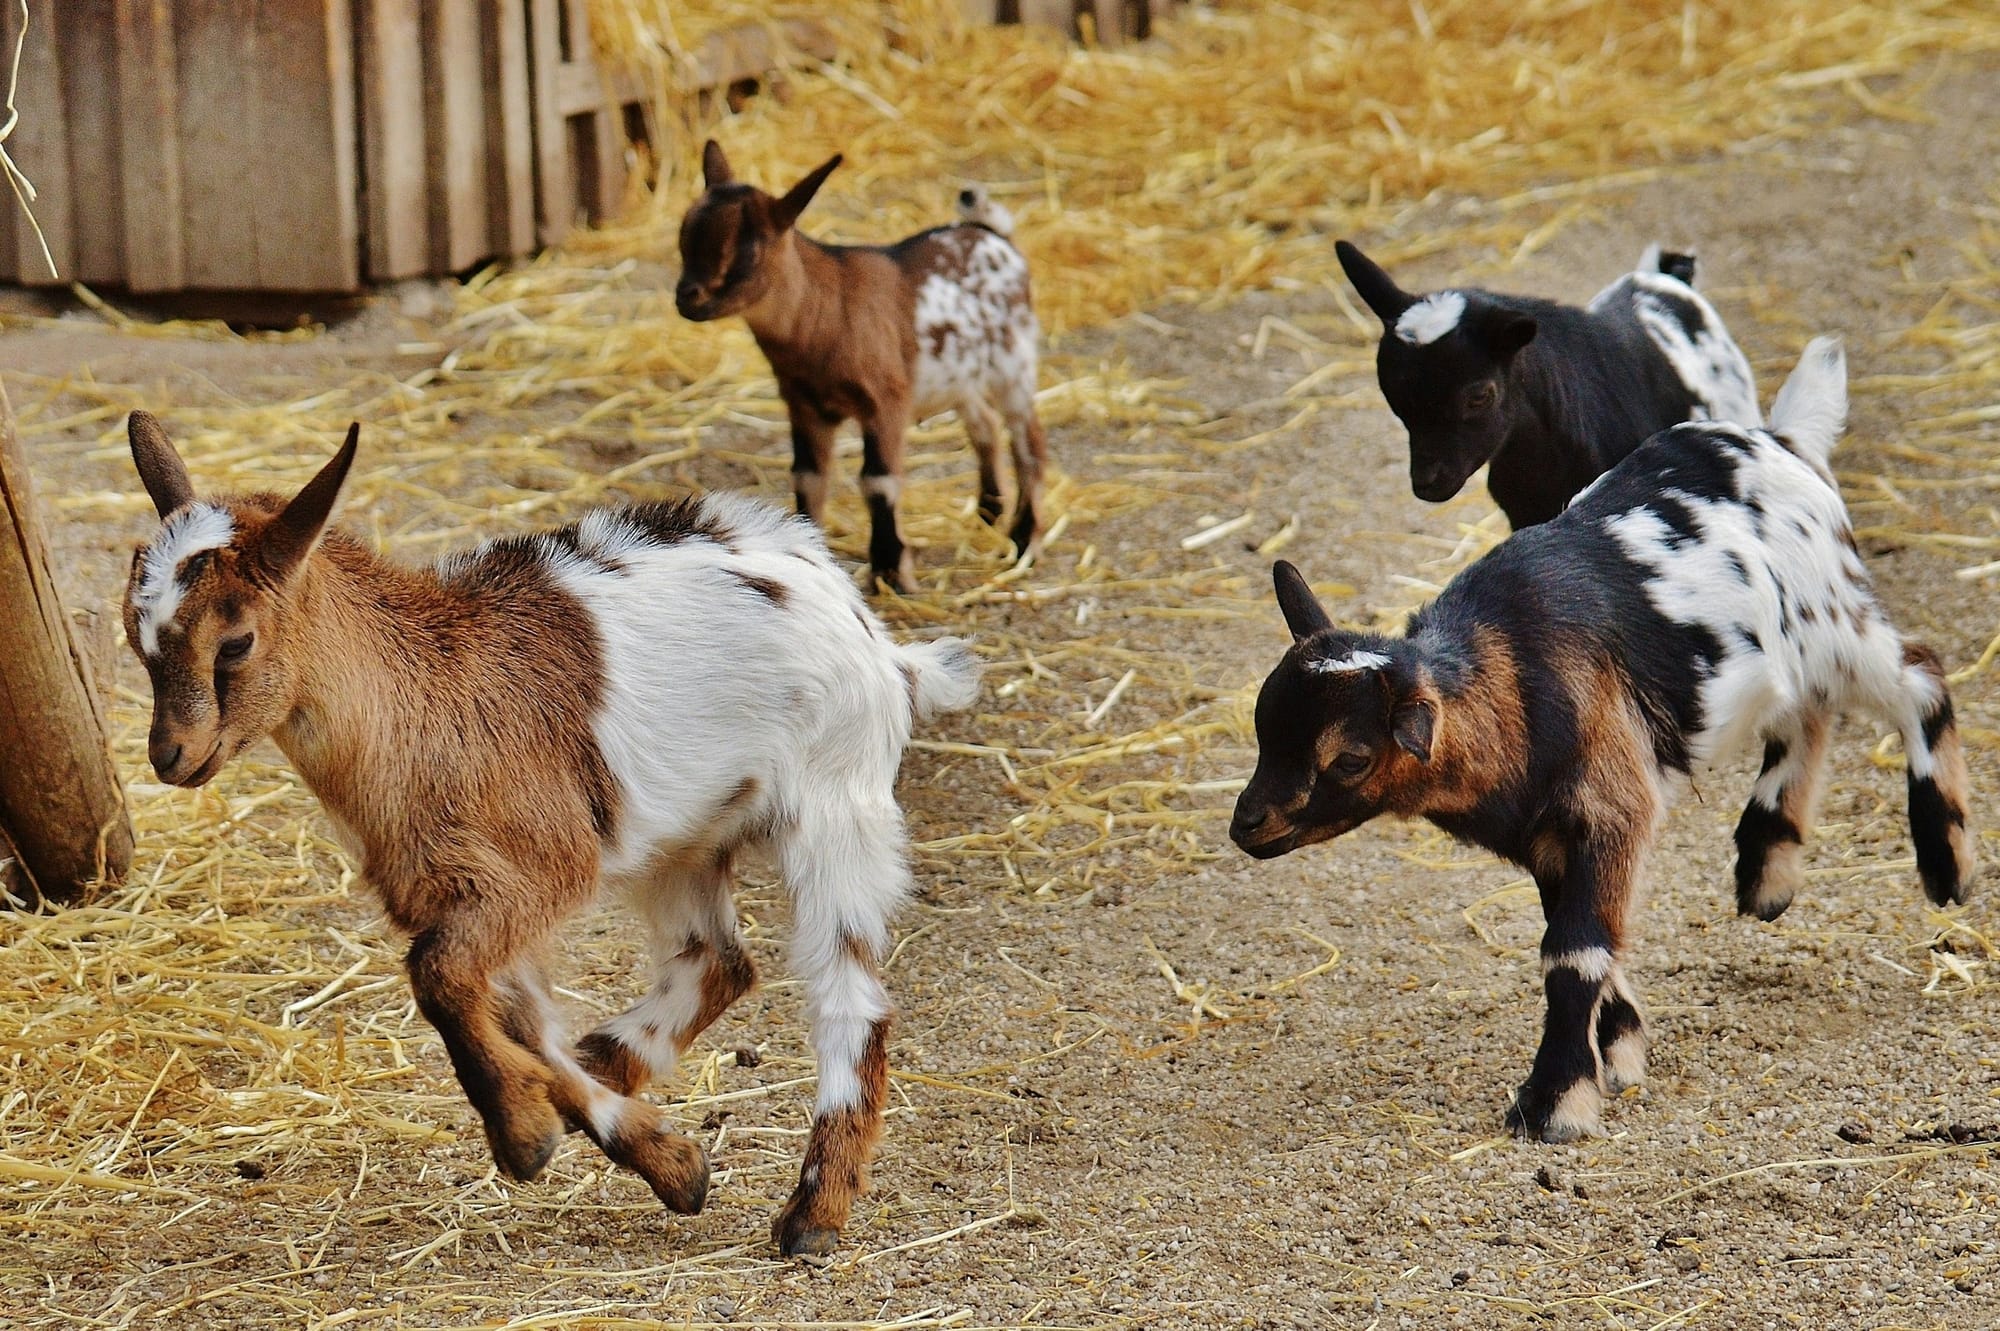 Small goats running